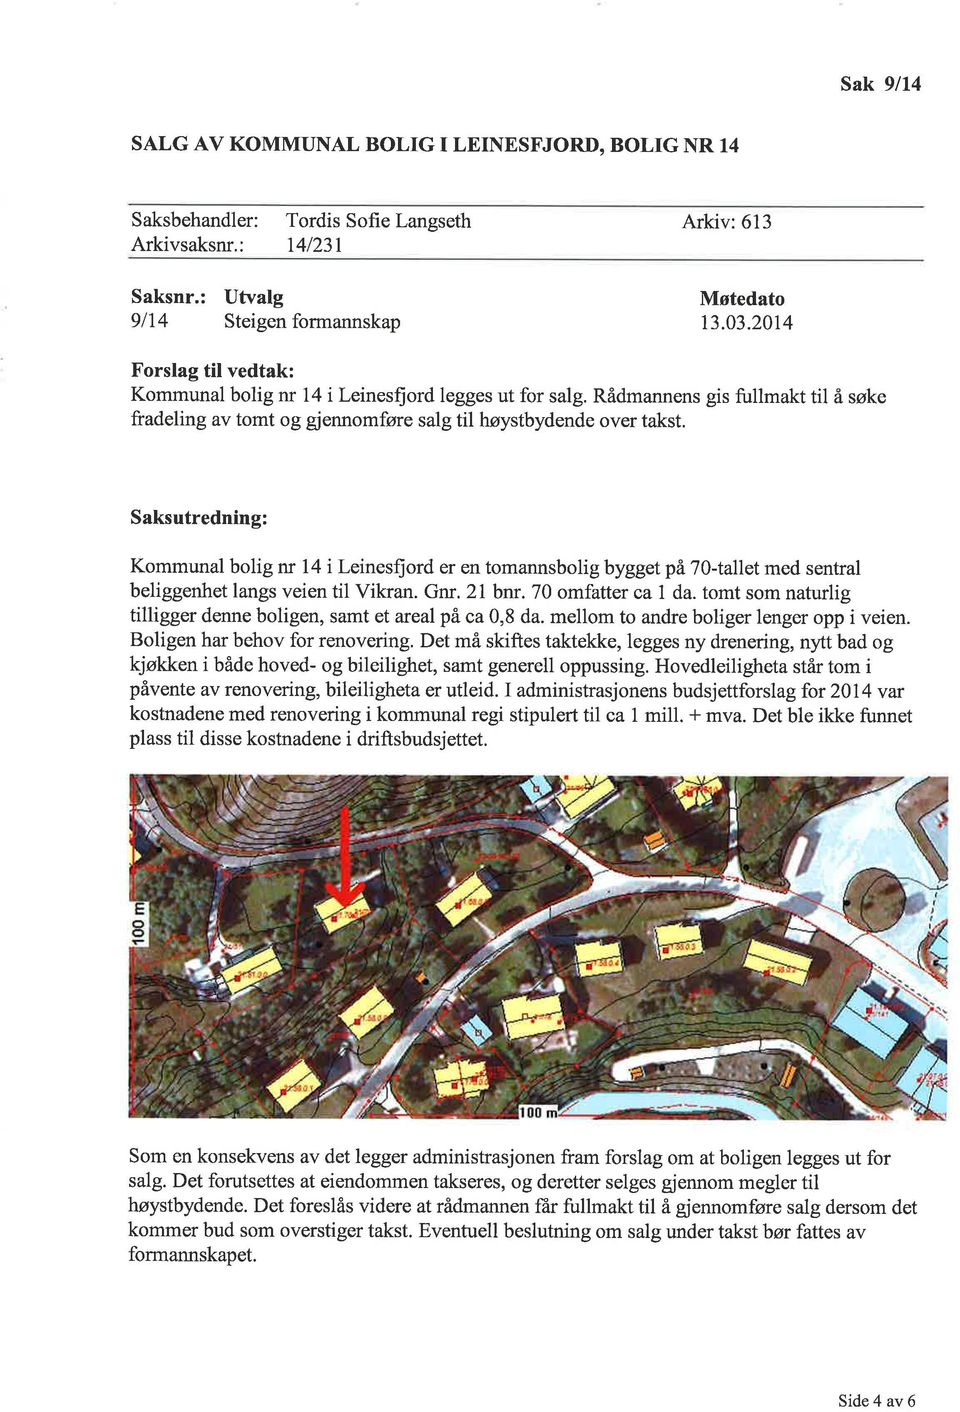 Saksutredning: Kommunal bolig nr 14 i Leinesfiord er en tomannsbolig byggetpâ7}-tallet med sentral beliggenhet langs veien til Vikran. Gnr.2 bnr. 70 omfatter ca da.